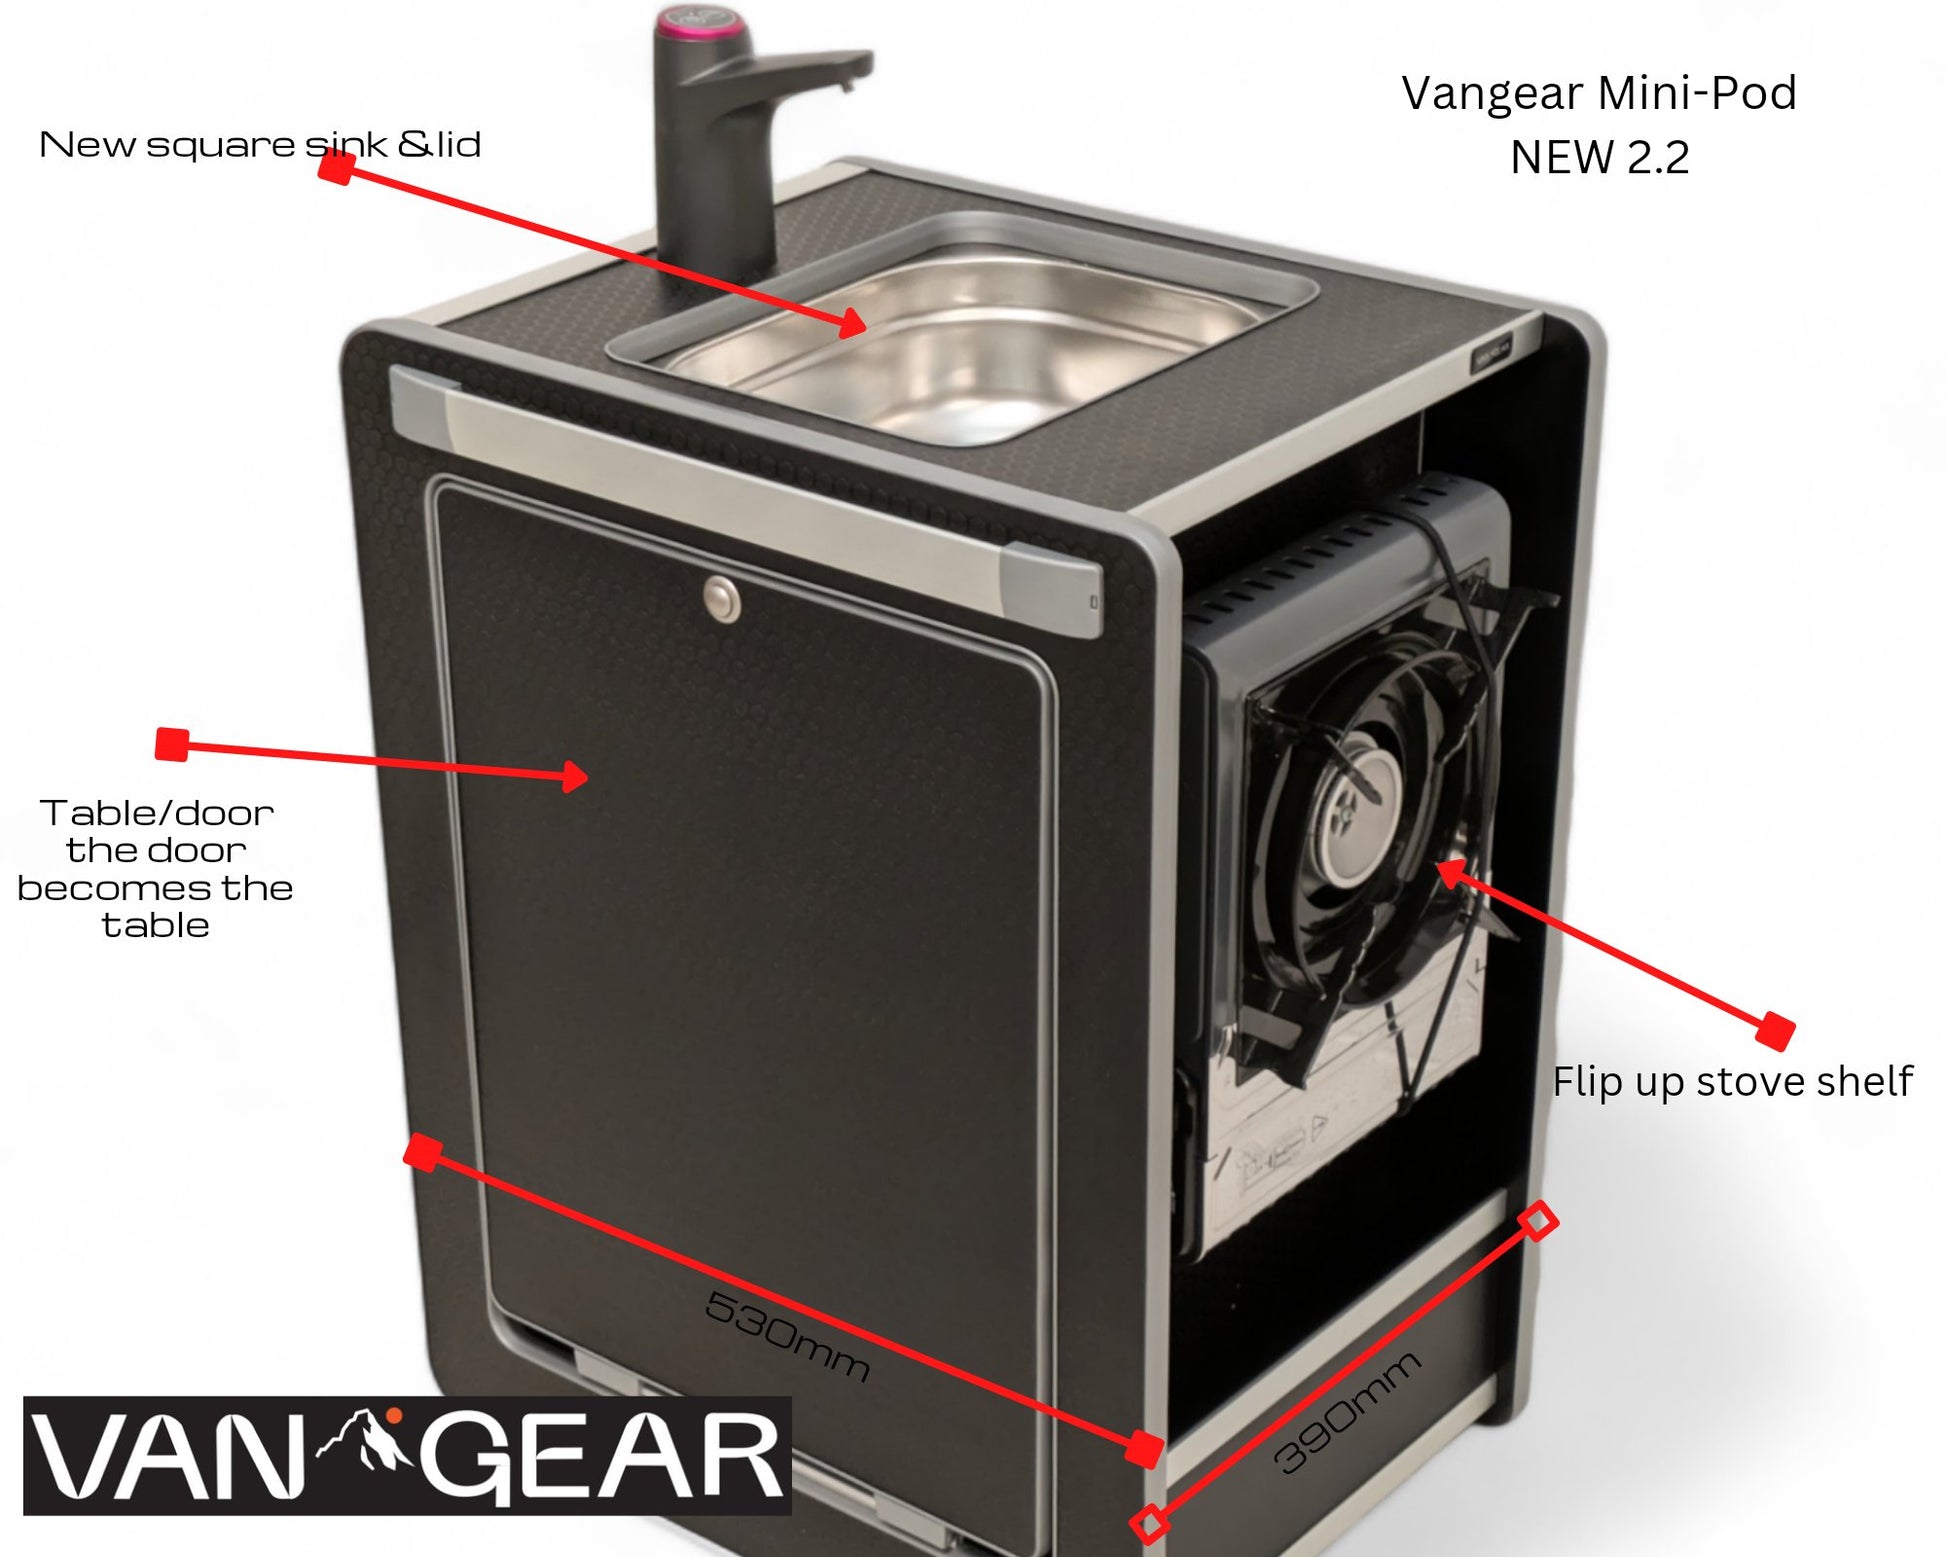 NEW Vangear Mini - Pod 2.2 Campervan Kitchen Pod (Black) NEW 2.2 - Vangear UK